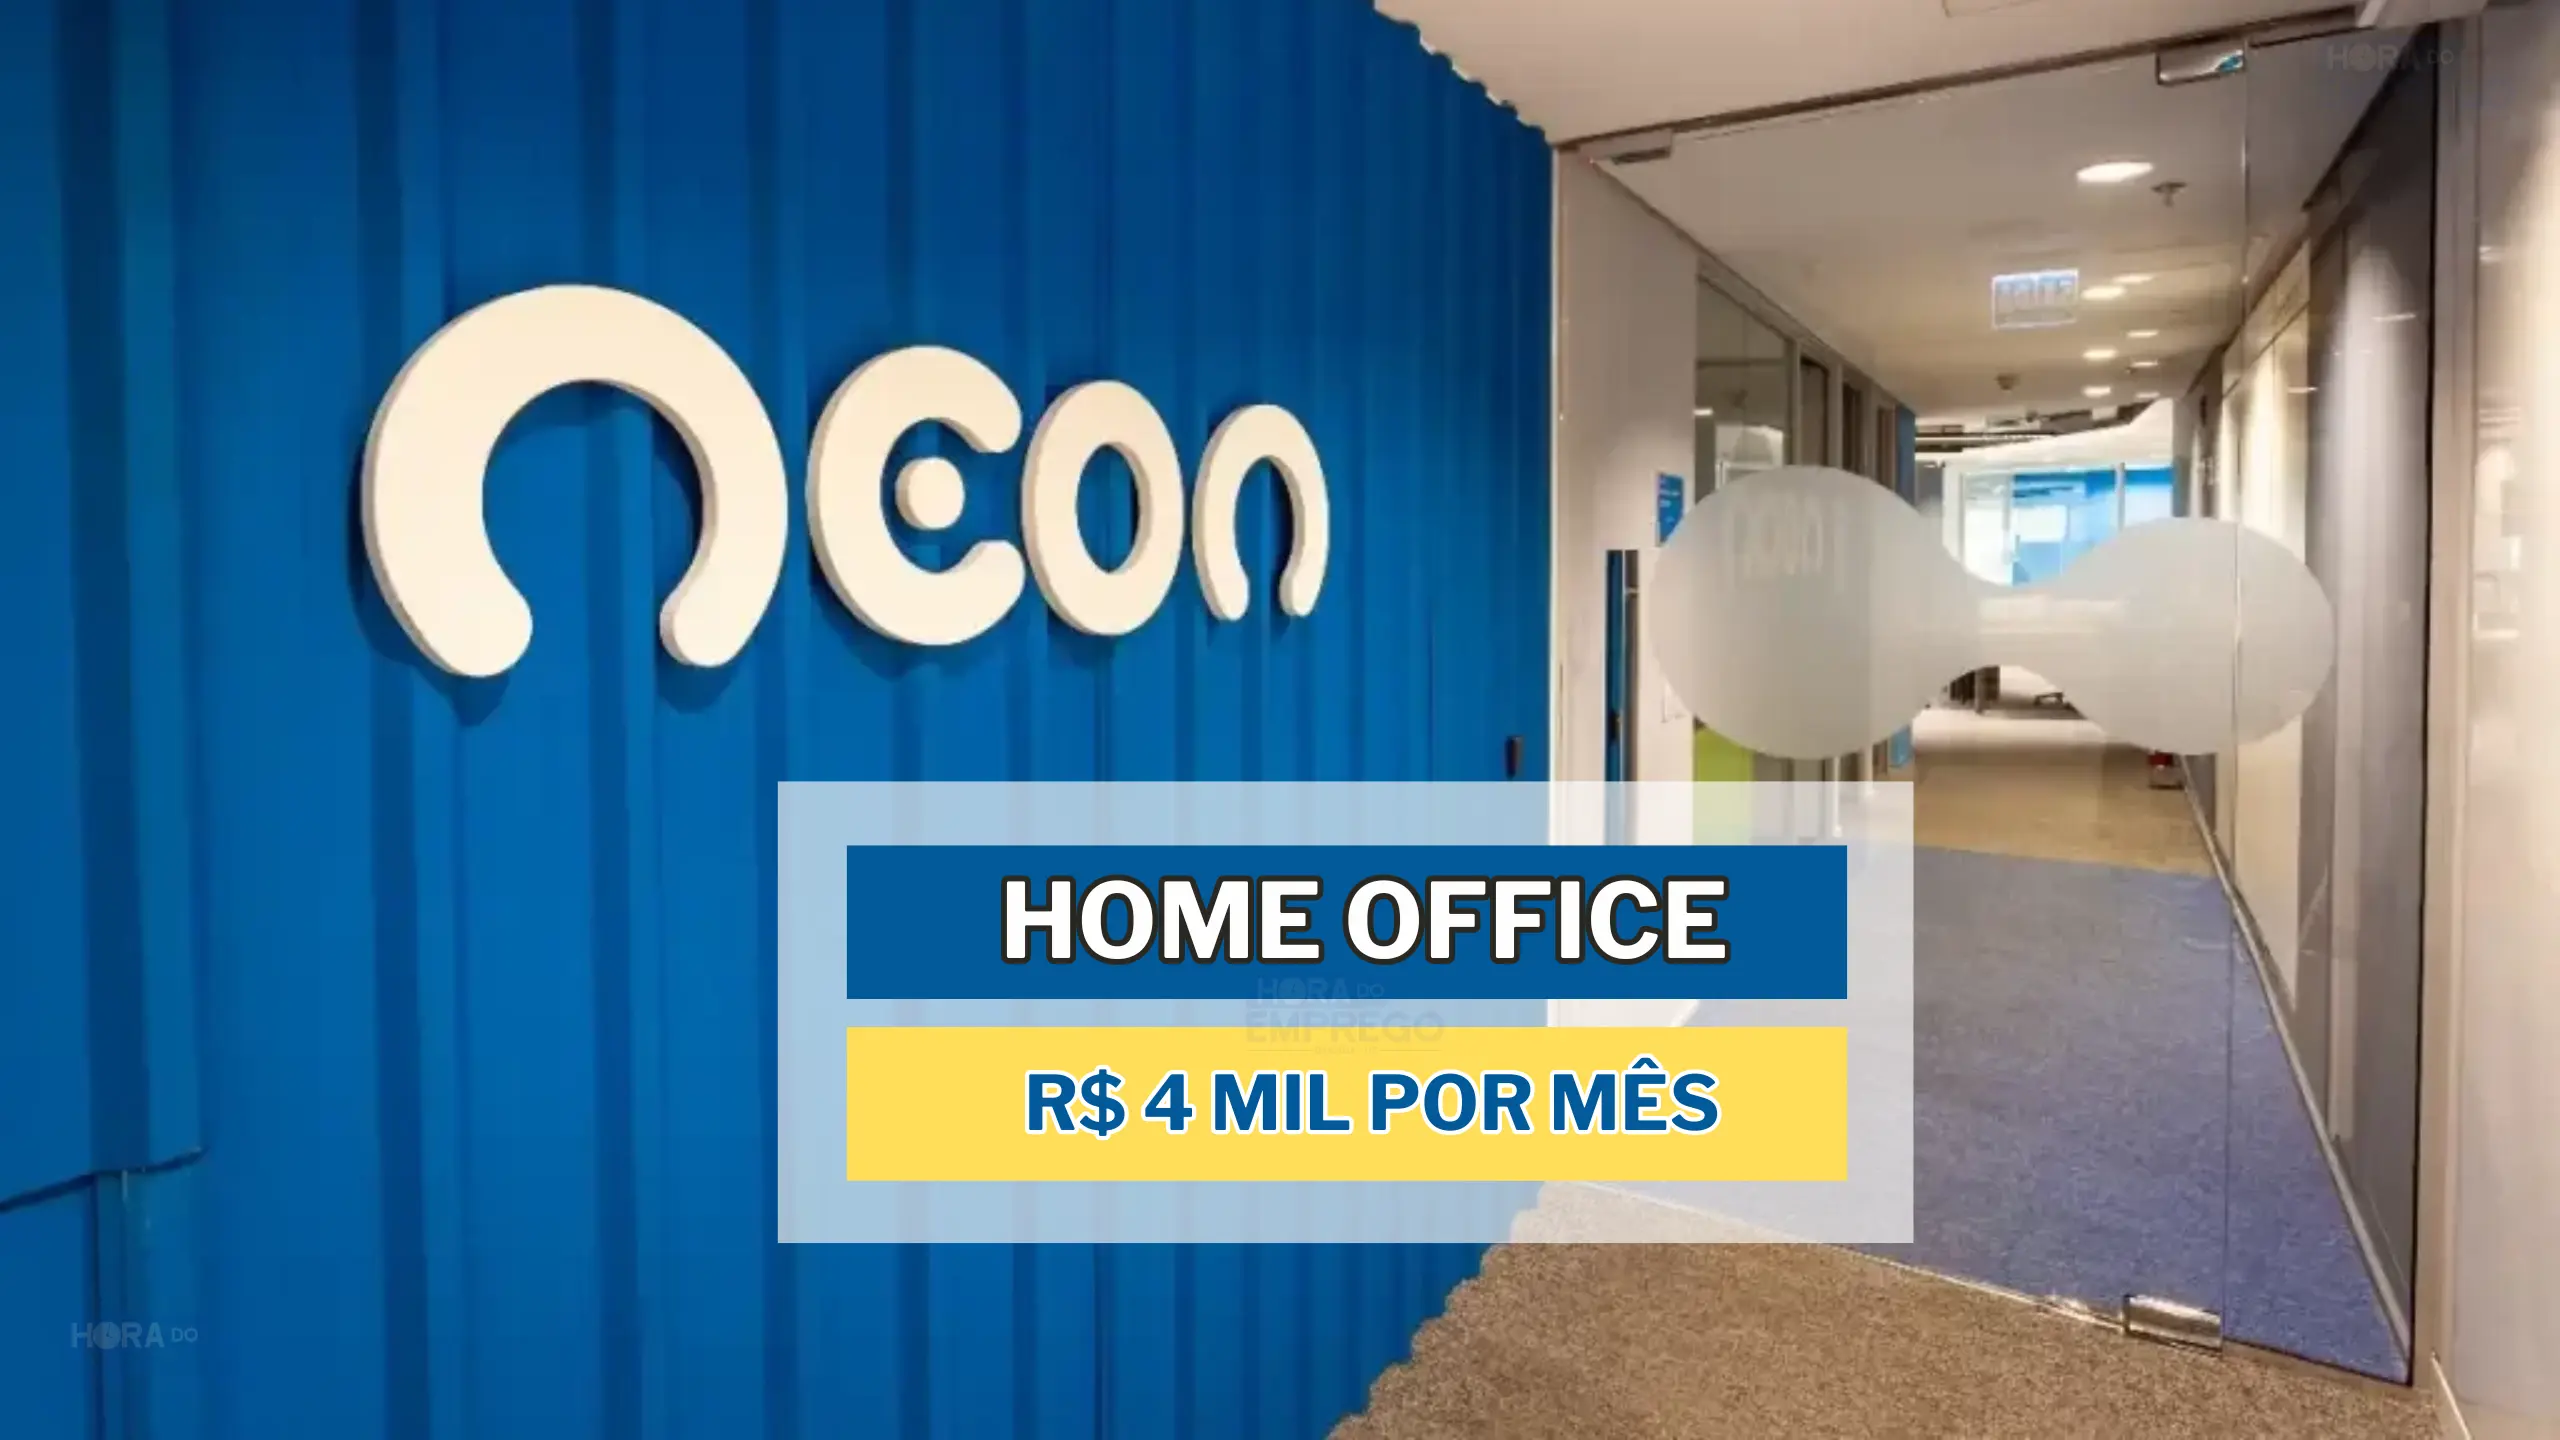 Trabalhe de Casa: Banco NEON abre vaga HOME OFFICE com salário de até 4 MIL por mês para Analista de Captação